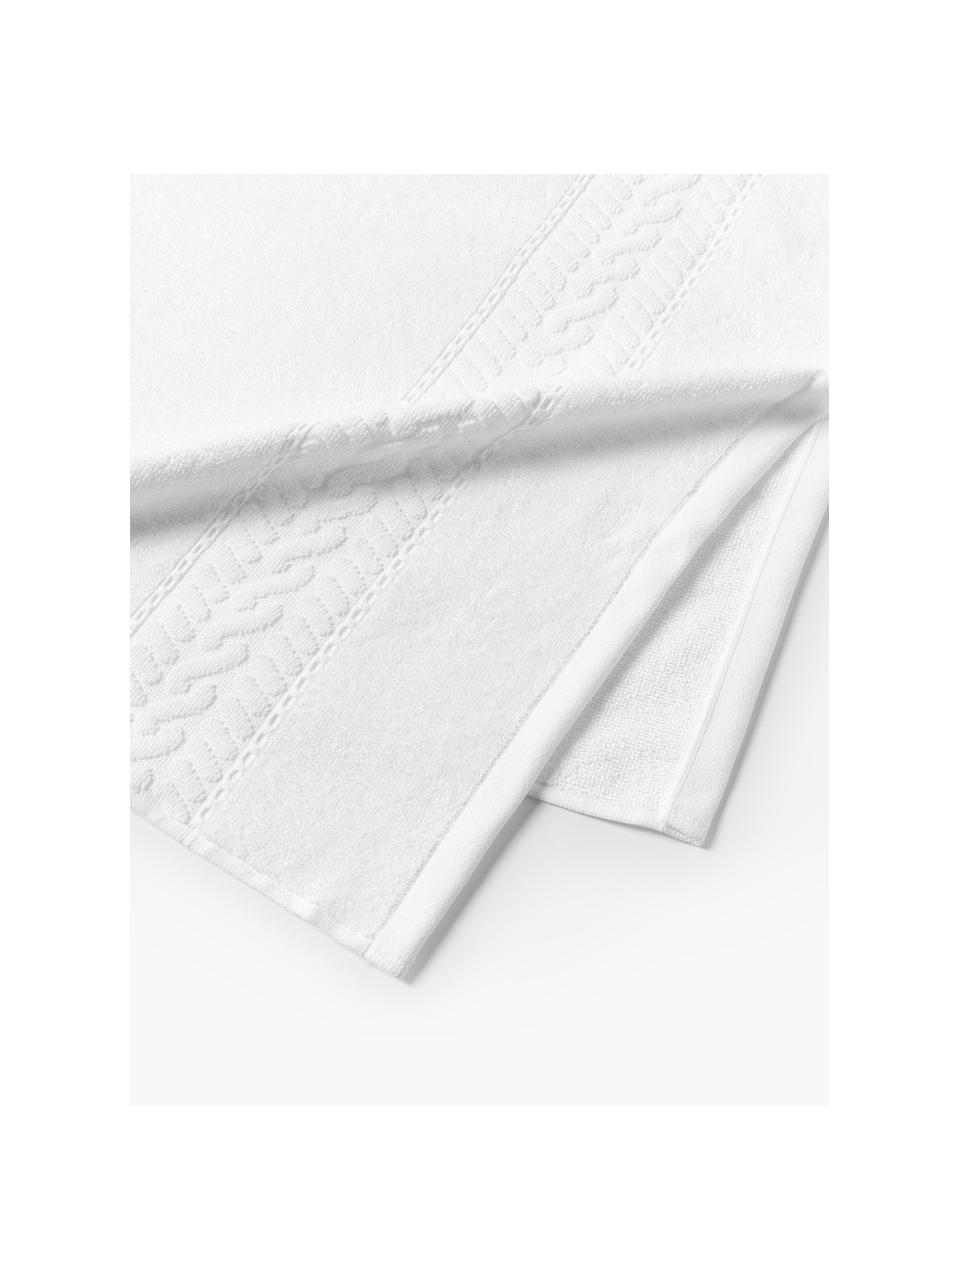 Ręcznik Cordelia, różne rozmiary, Biały, Ręcznik kąpielowy, S 70 x D 140 cm